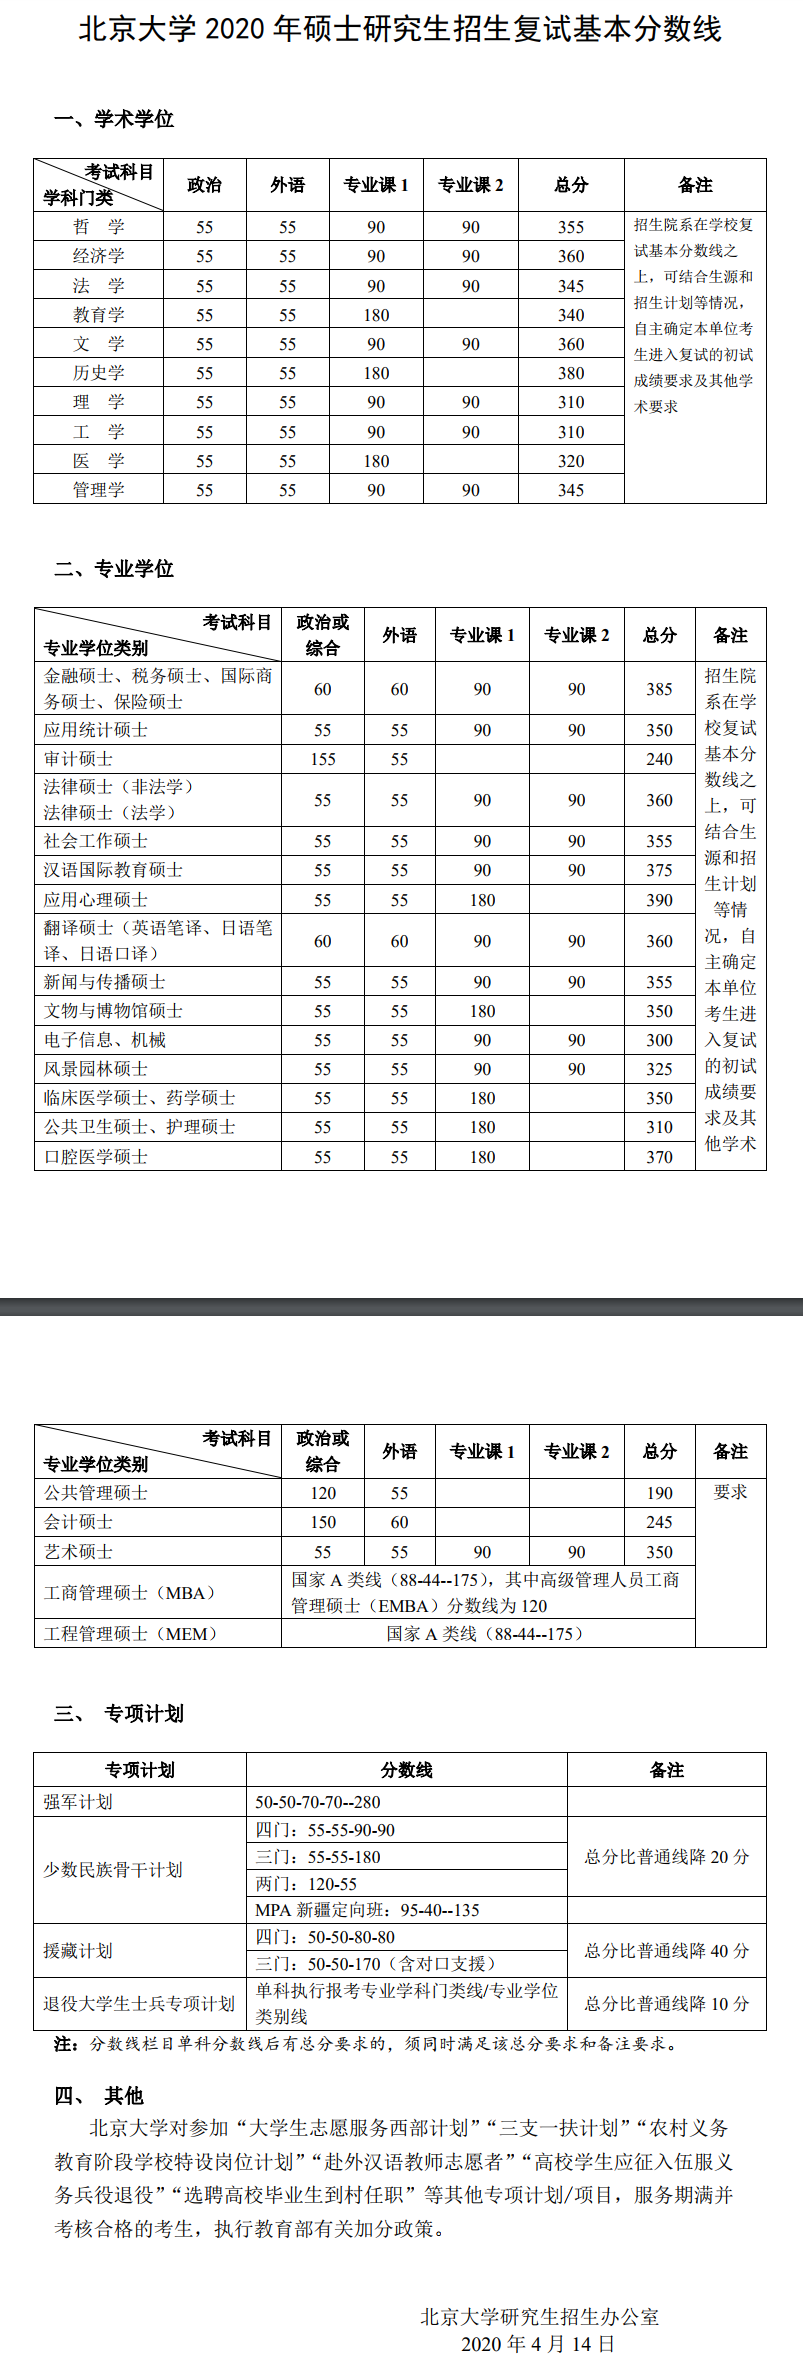 北京大学2020年研究生入学考试复试分数线公布